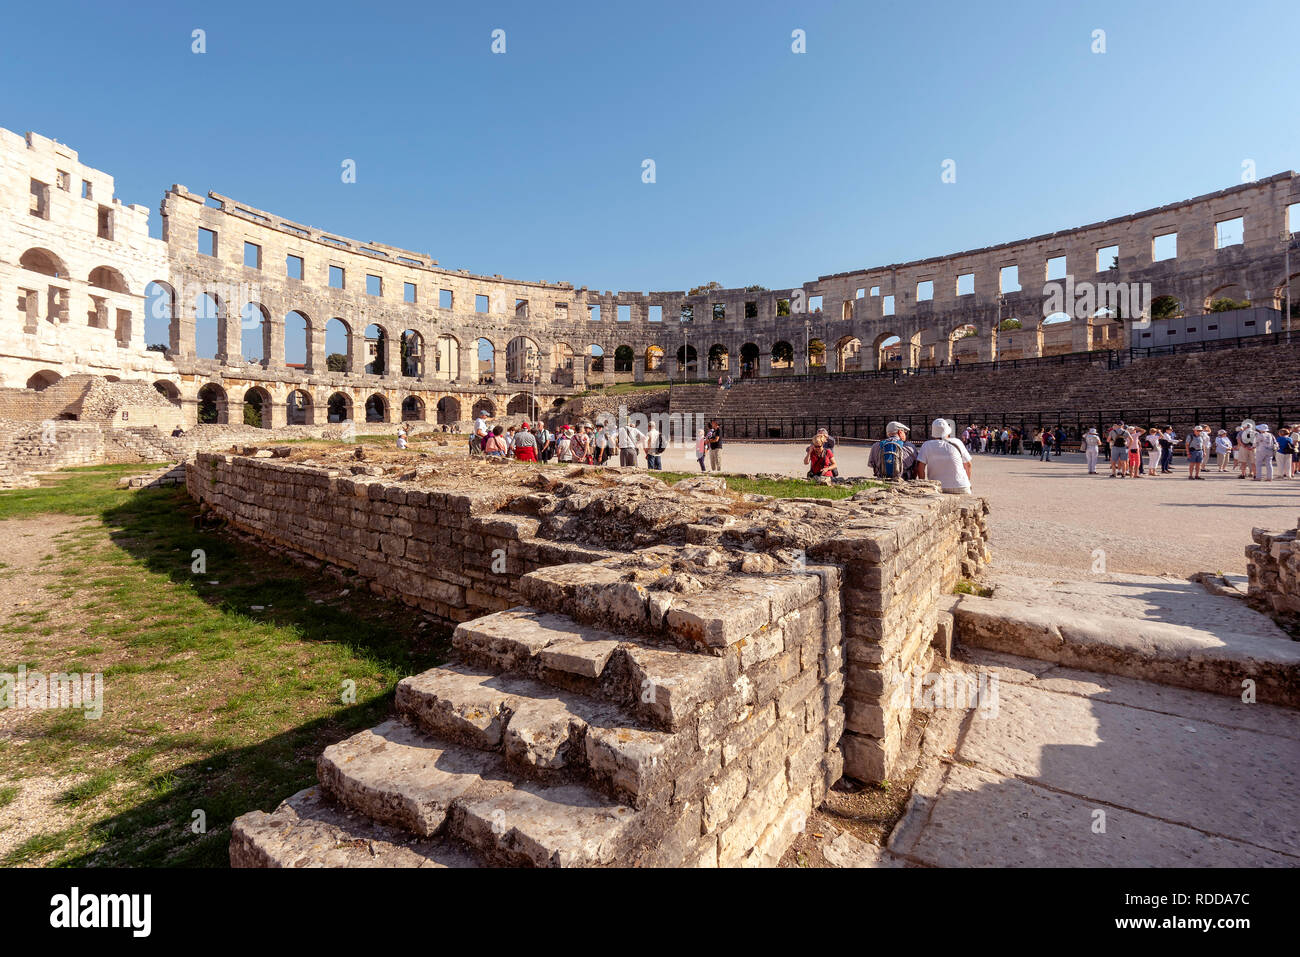 The Roman Coliseum, Pula, Croatia Stock Photo